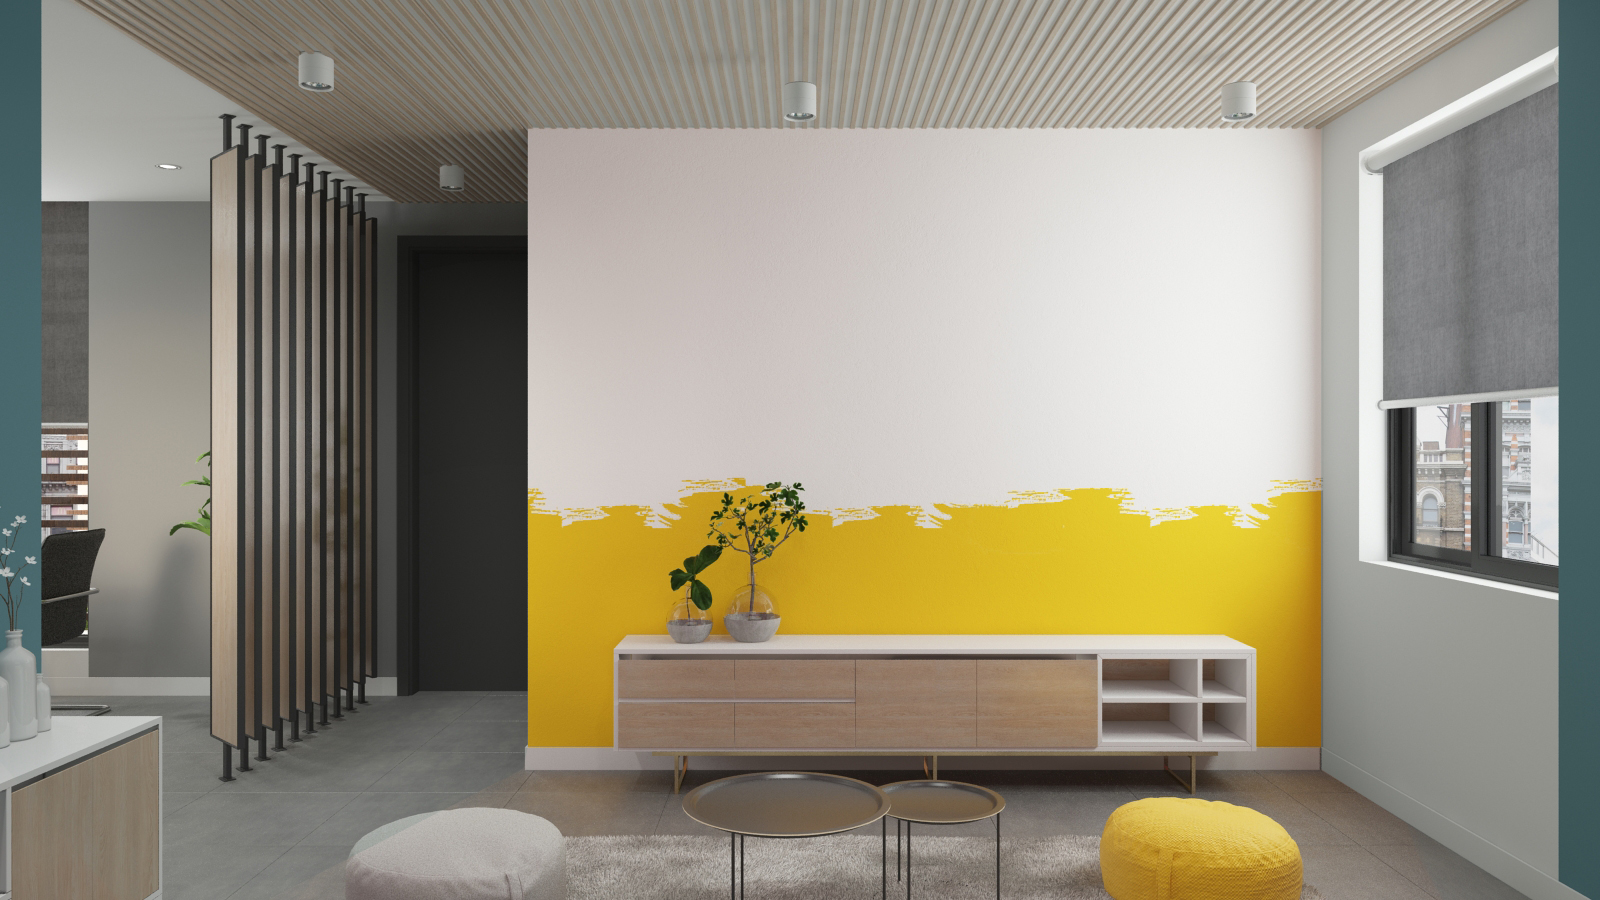 Phòng tiếp khách công ty APP mang đến cảm giác thoải mái, vui vẻ cho khách hàng nhờ sử dụng gam màu vàng trên tường và ghế ngồi